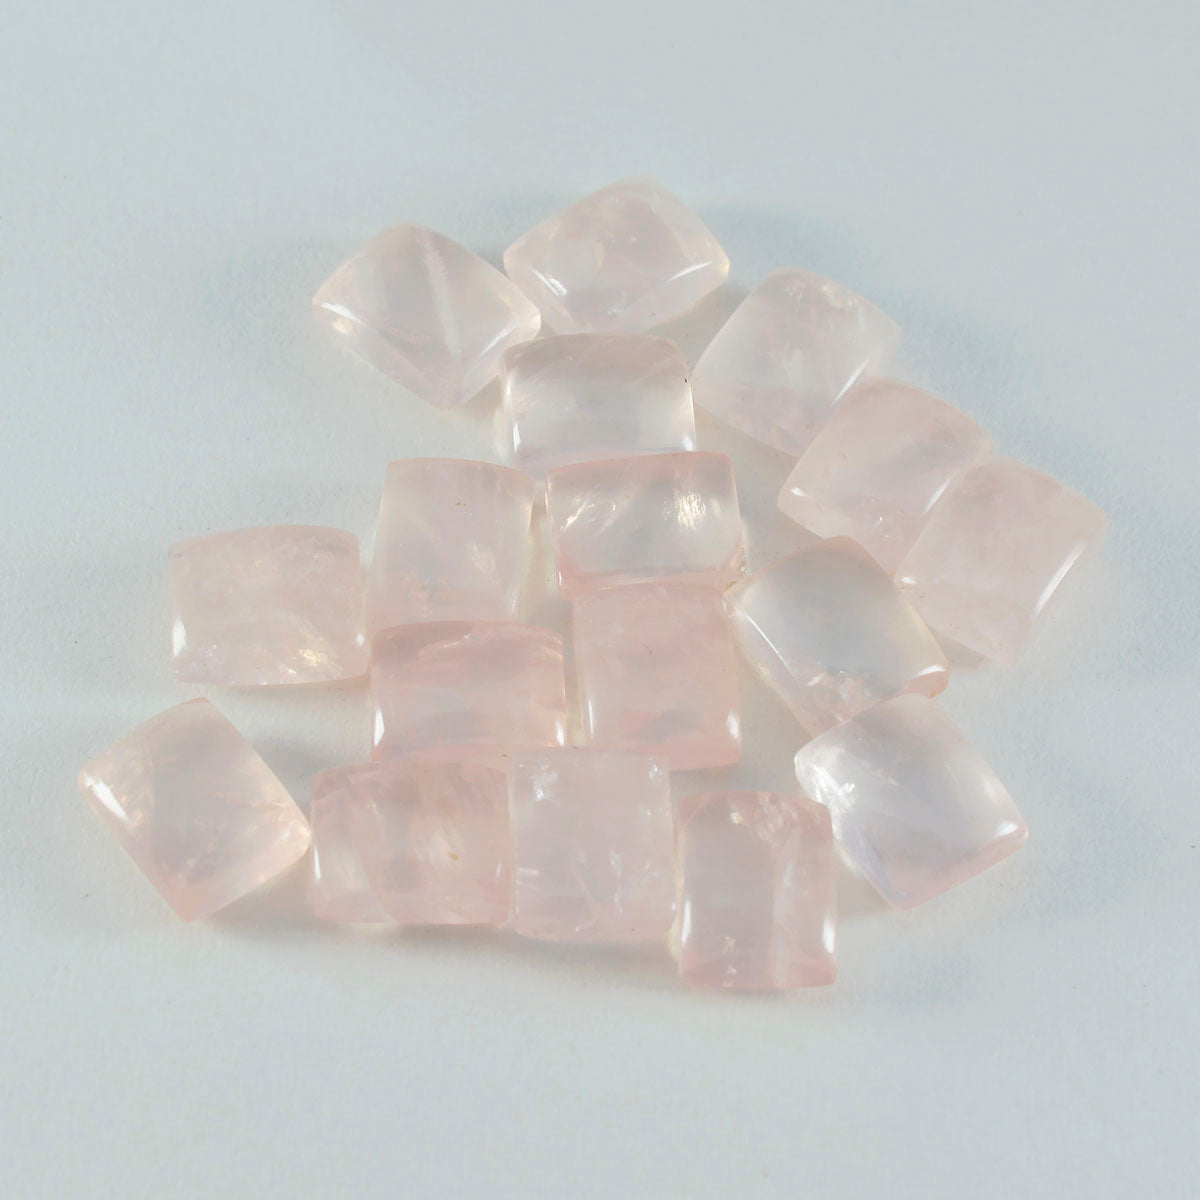 riyogems 1 st rosa rosékvarts cabochon 9x11 mm oktagonform av hög kvalitet pärlor